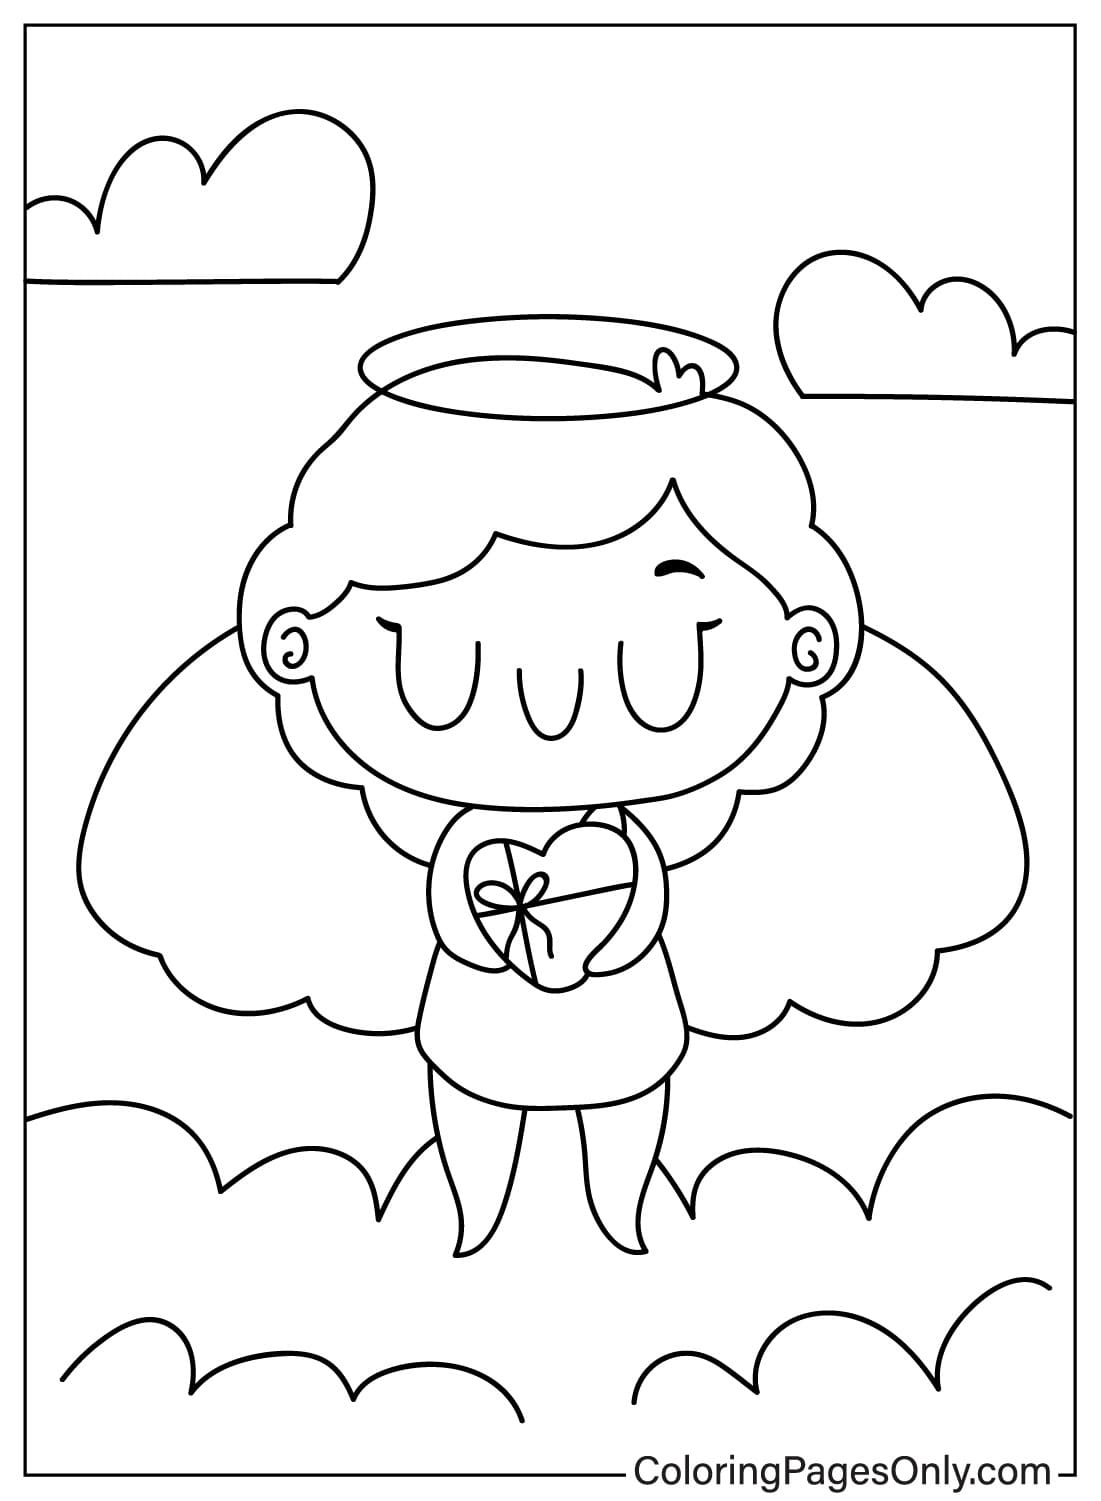 Página para colorear de Cupido imprimible gratis de Cupido